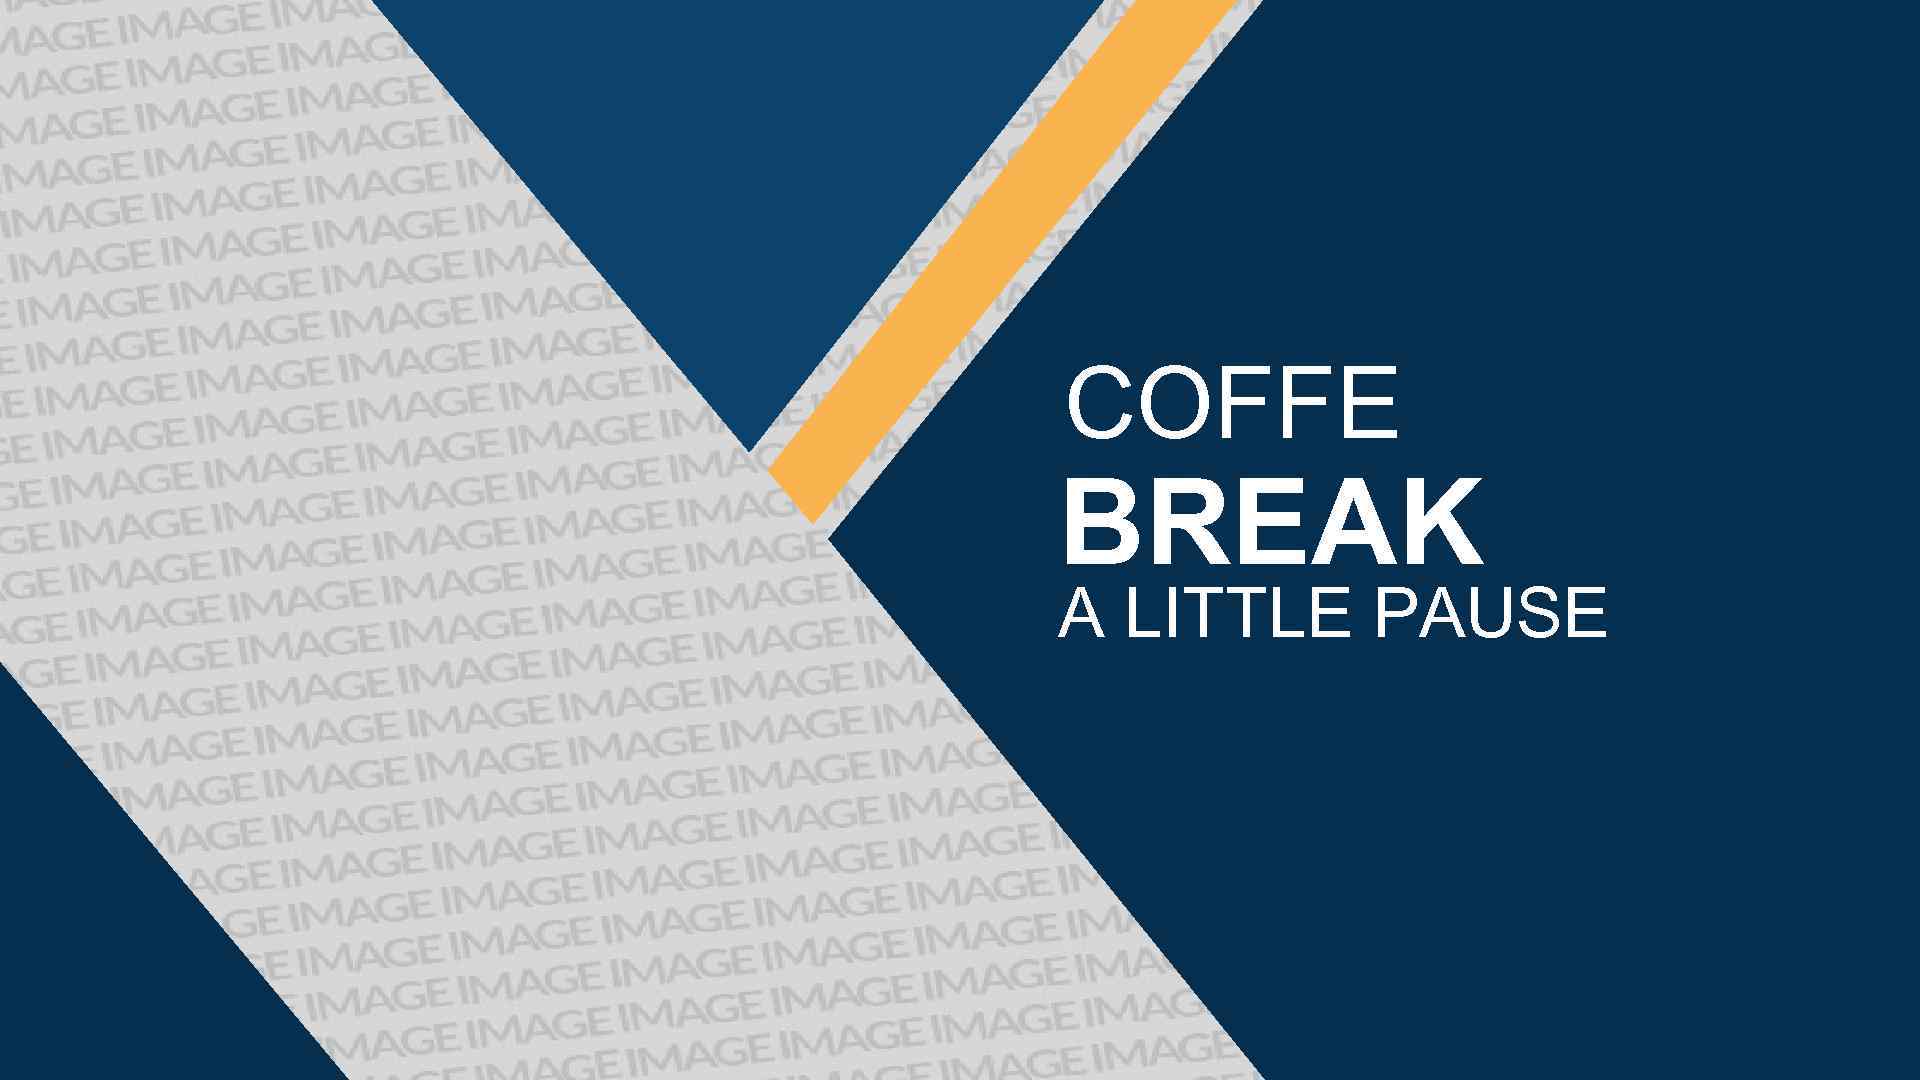 COFFE BREAK A LITTLE PAUSE 